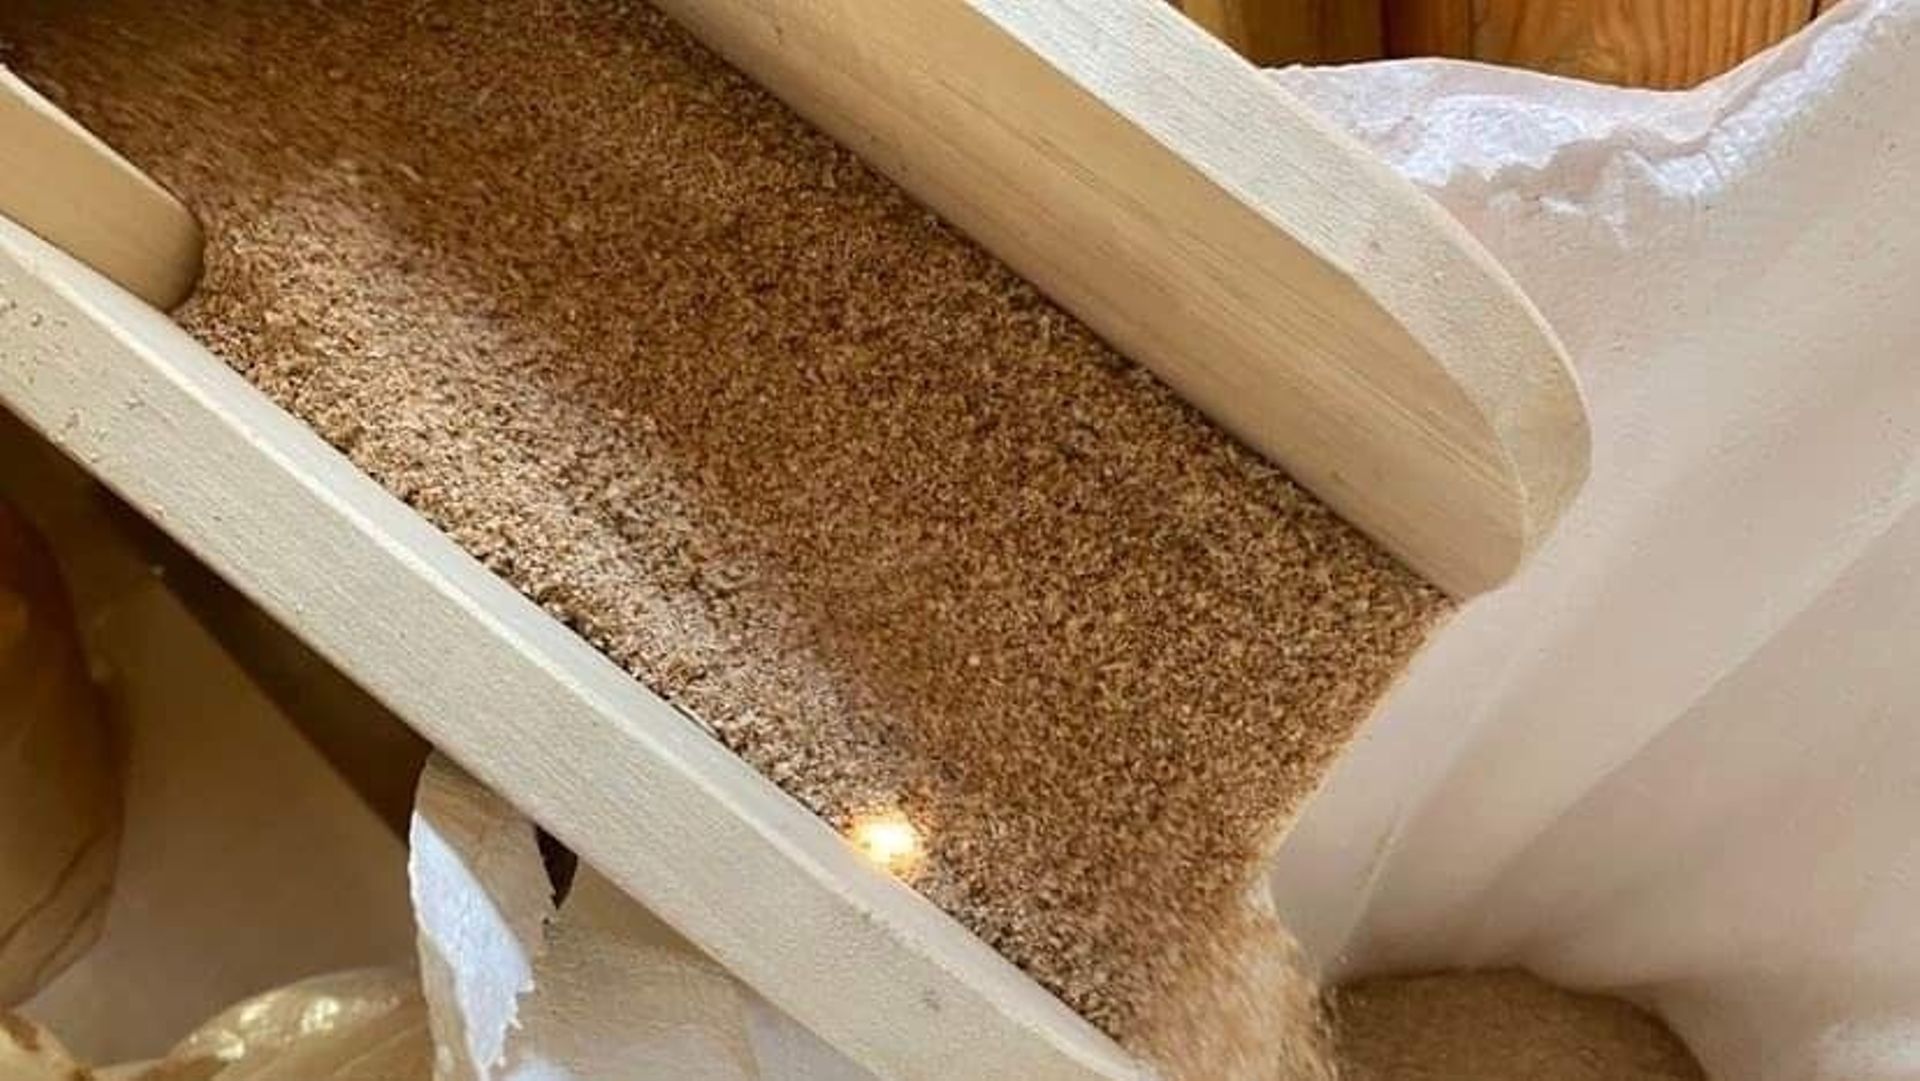 Par journée type, le moulin peut broyer jusqu'à 500 kg de farine.